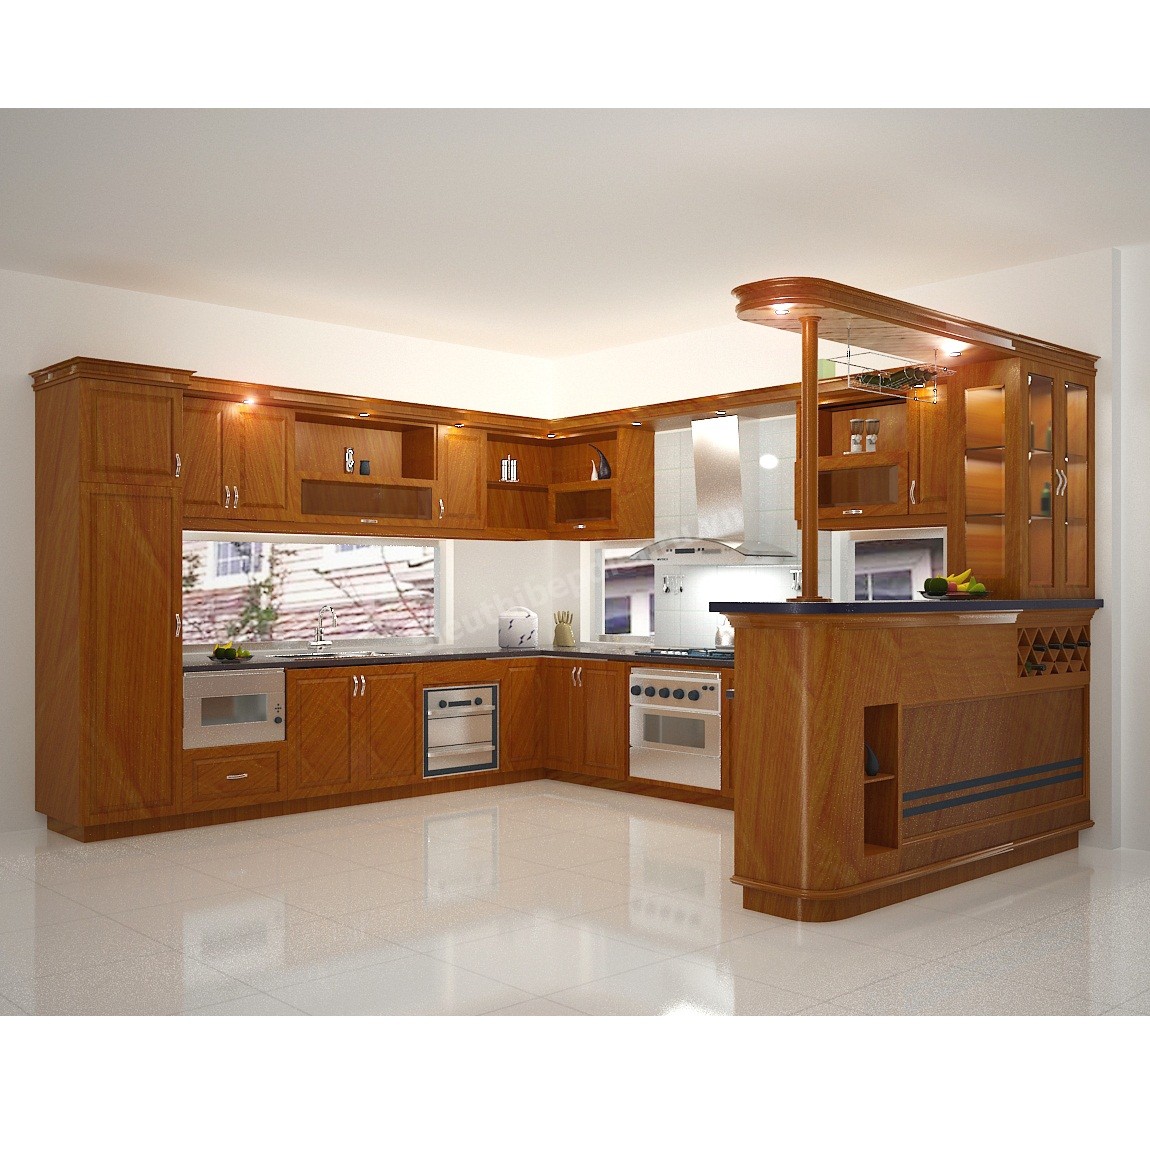 Tủ bếp gỗ xoan đào Hoàng Anh Gia Lai GL365-A1-9